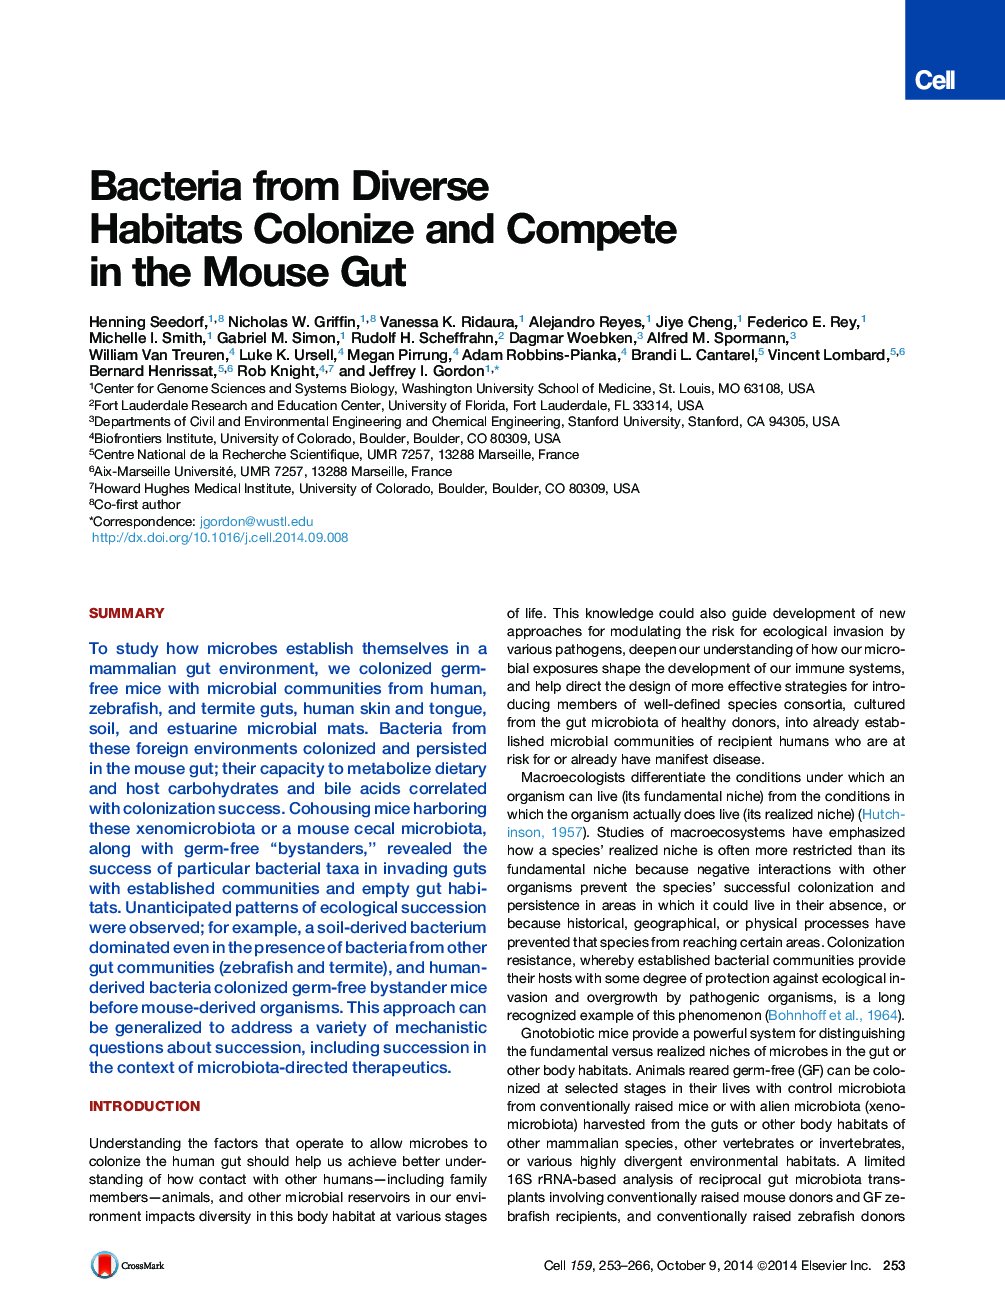 باکتری های زیستگاه های مختلف گیاهان زینتی و رقابت در گوته ماوس 